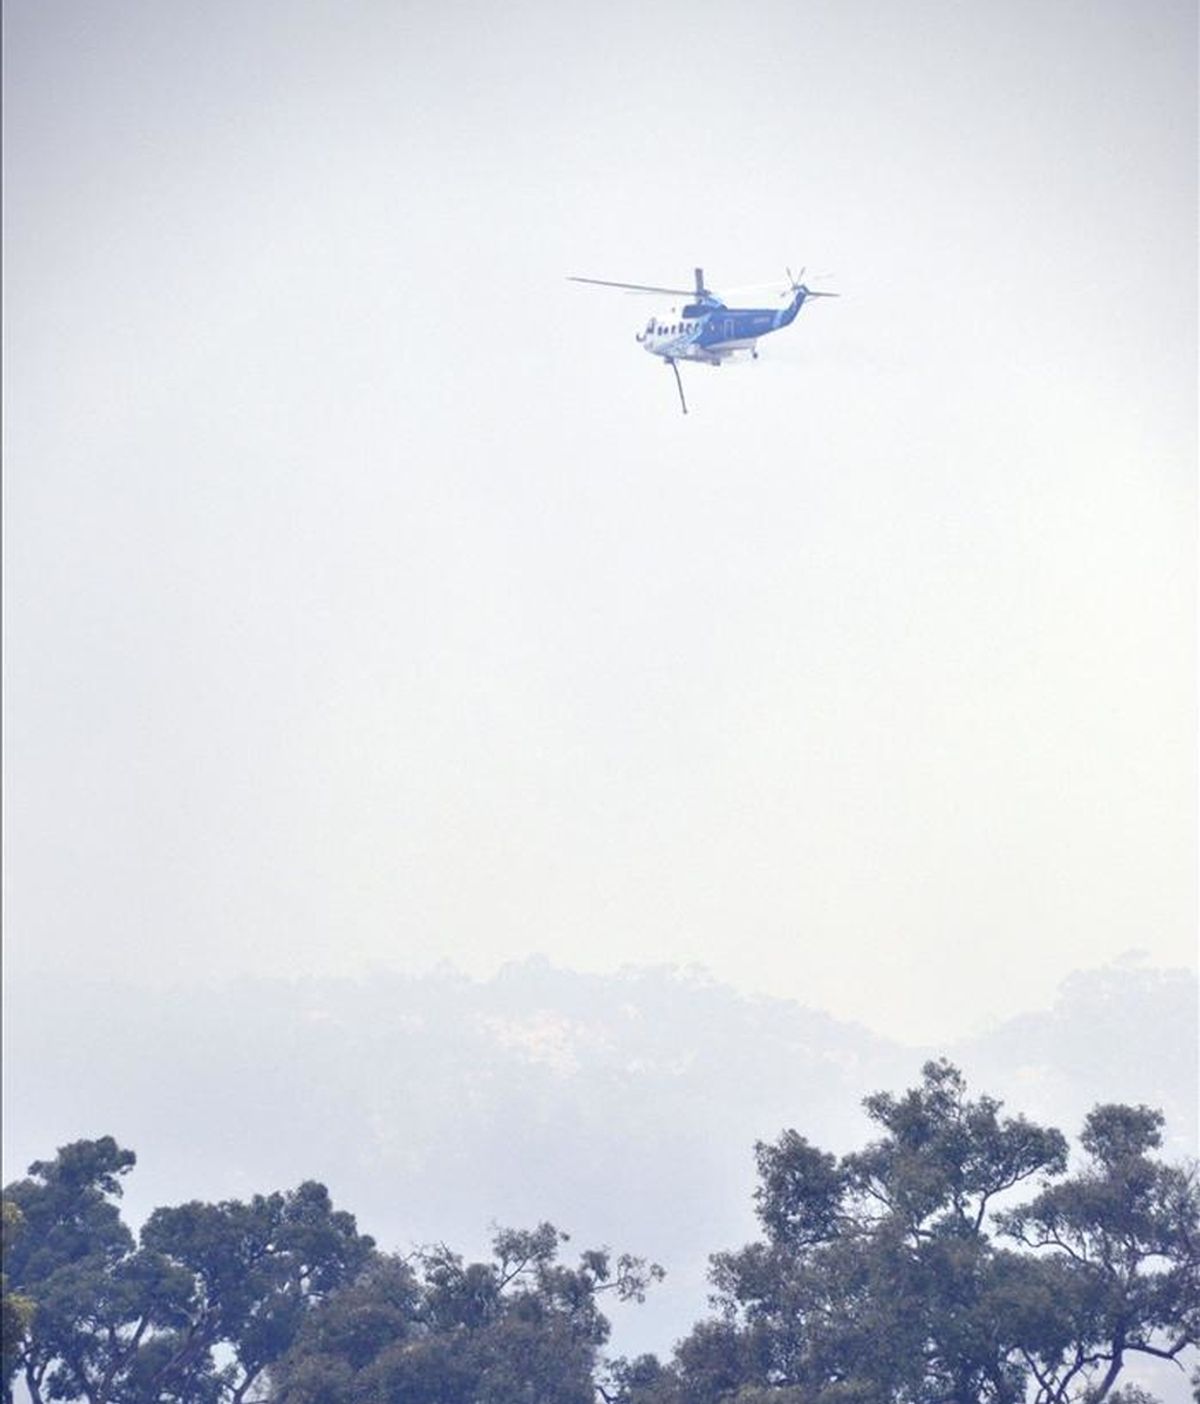 Un helicóptero lucha hoy contra el rápido avance de un incendio fuera de control cerca de Perth, ubicada en el estado de Australia Occidental. EFE